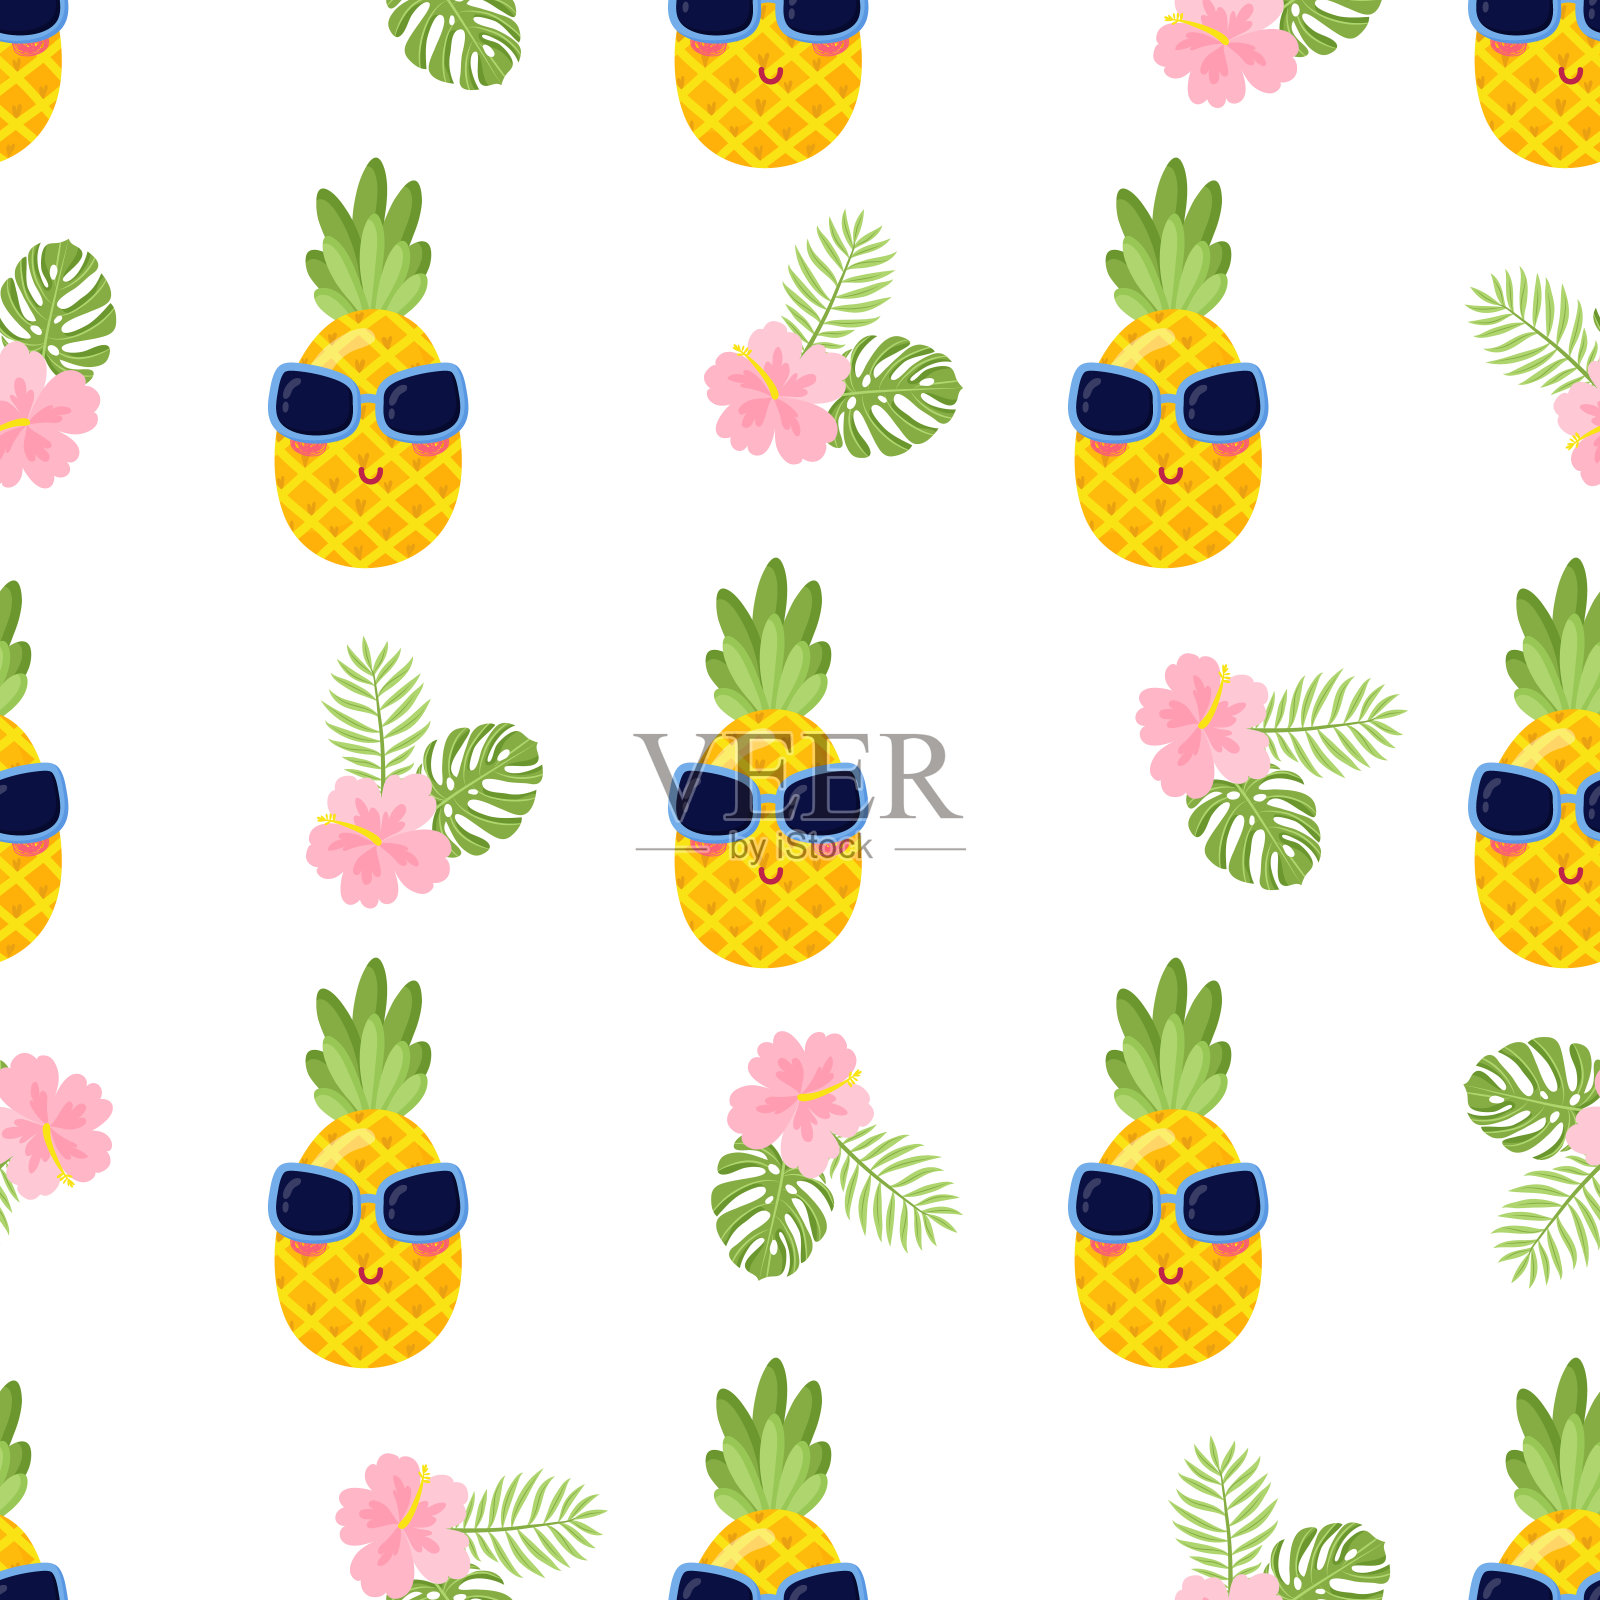 菠萝向量背景插画图片素材